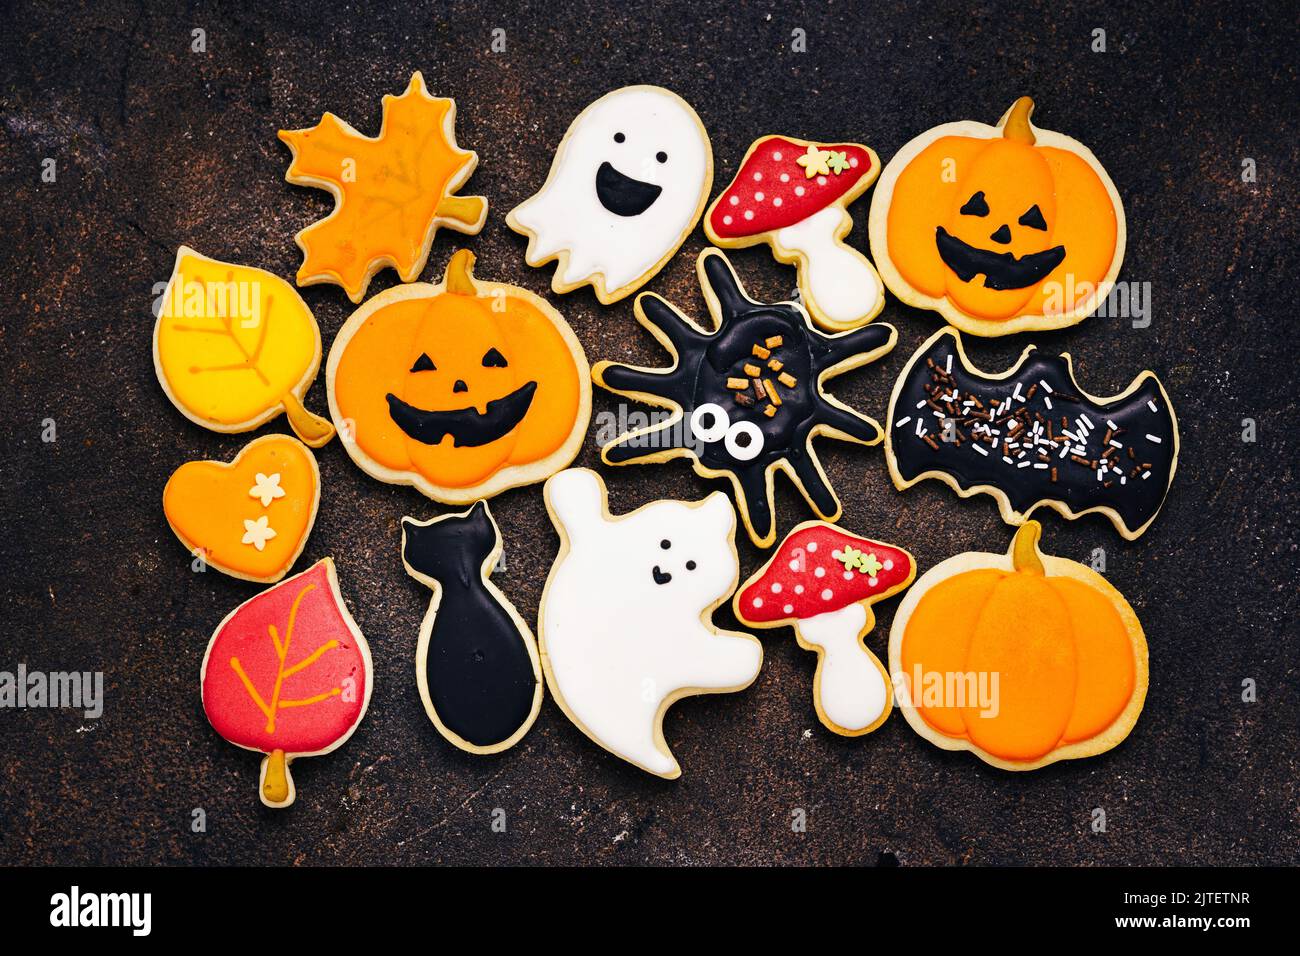 Vue de dessus de nombreux biscuits au sucre d'Halloween avec glase - citrouille jack, champignons, chat noir, fantômes, araignée, batte Banque D'Images